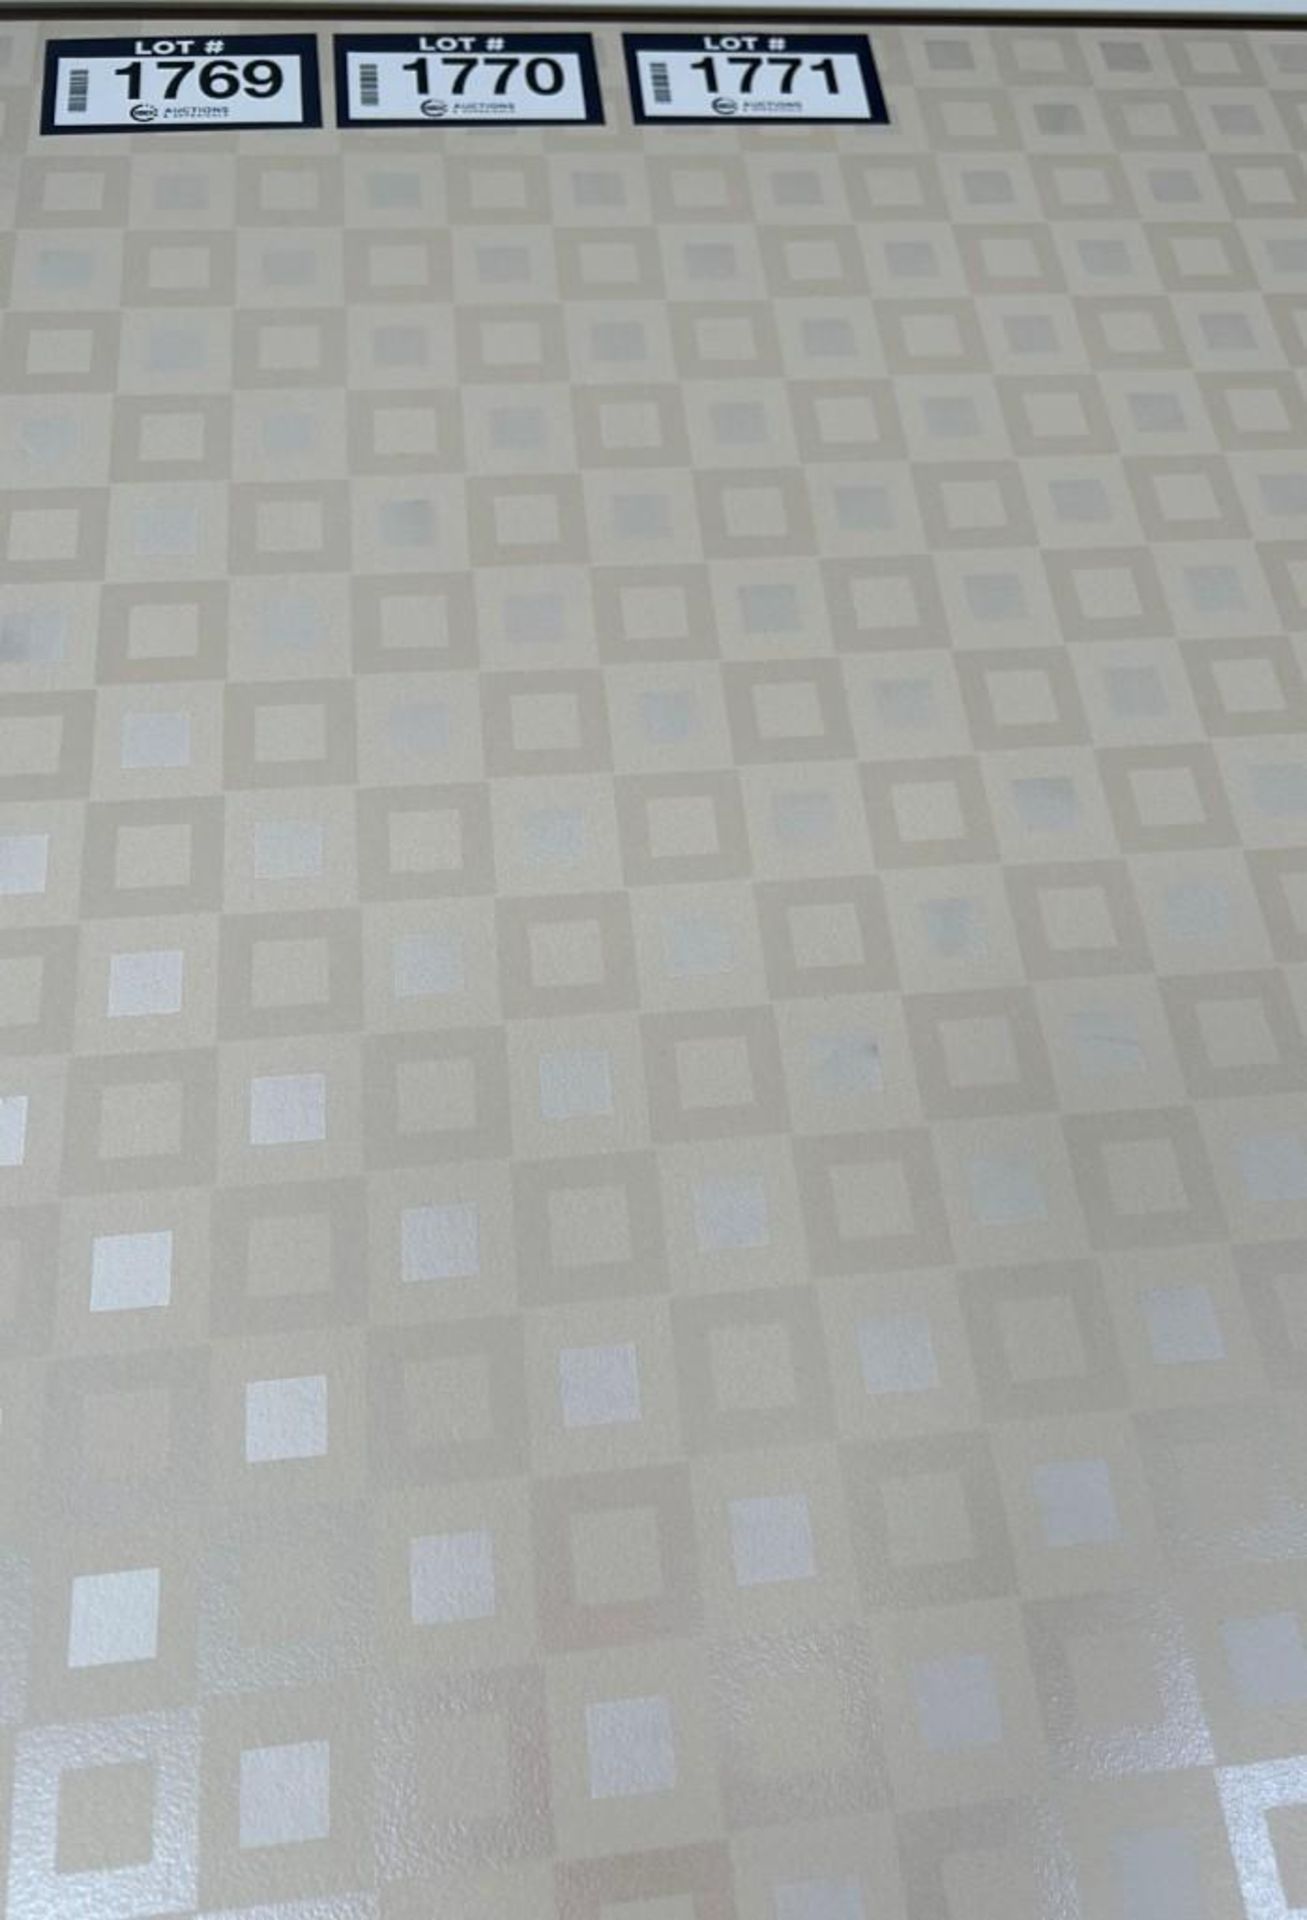 Lot of Approx. (2) Boxes- 48sq ft Paris C2-F13 24x48 Porcelain Tile. - Image 2 of 2